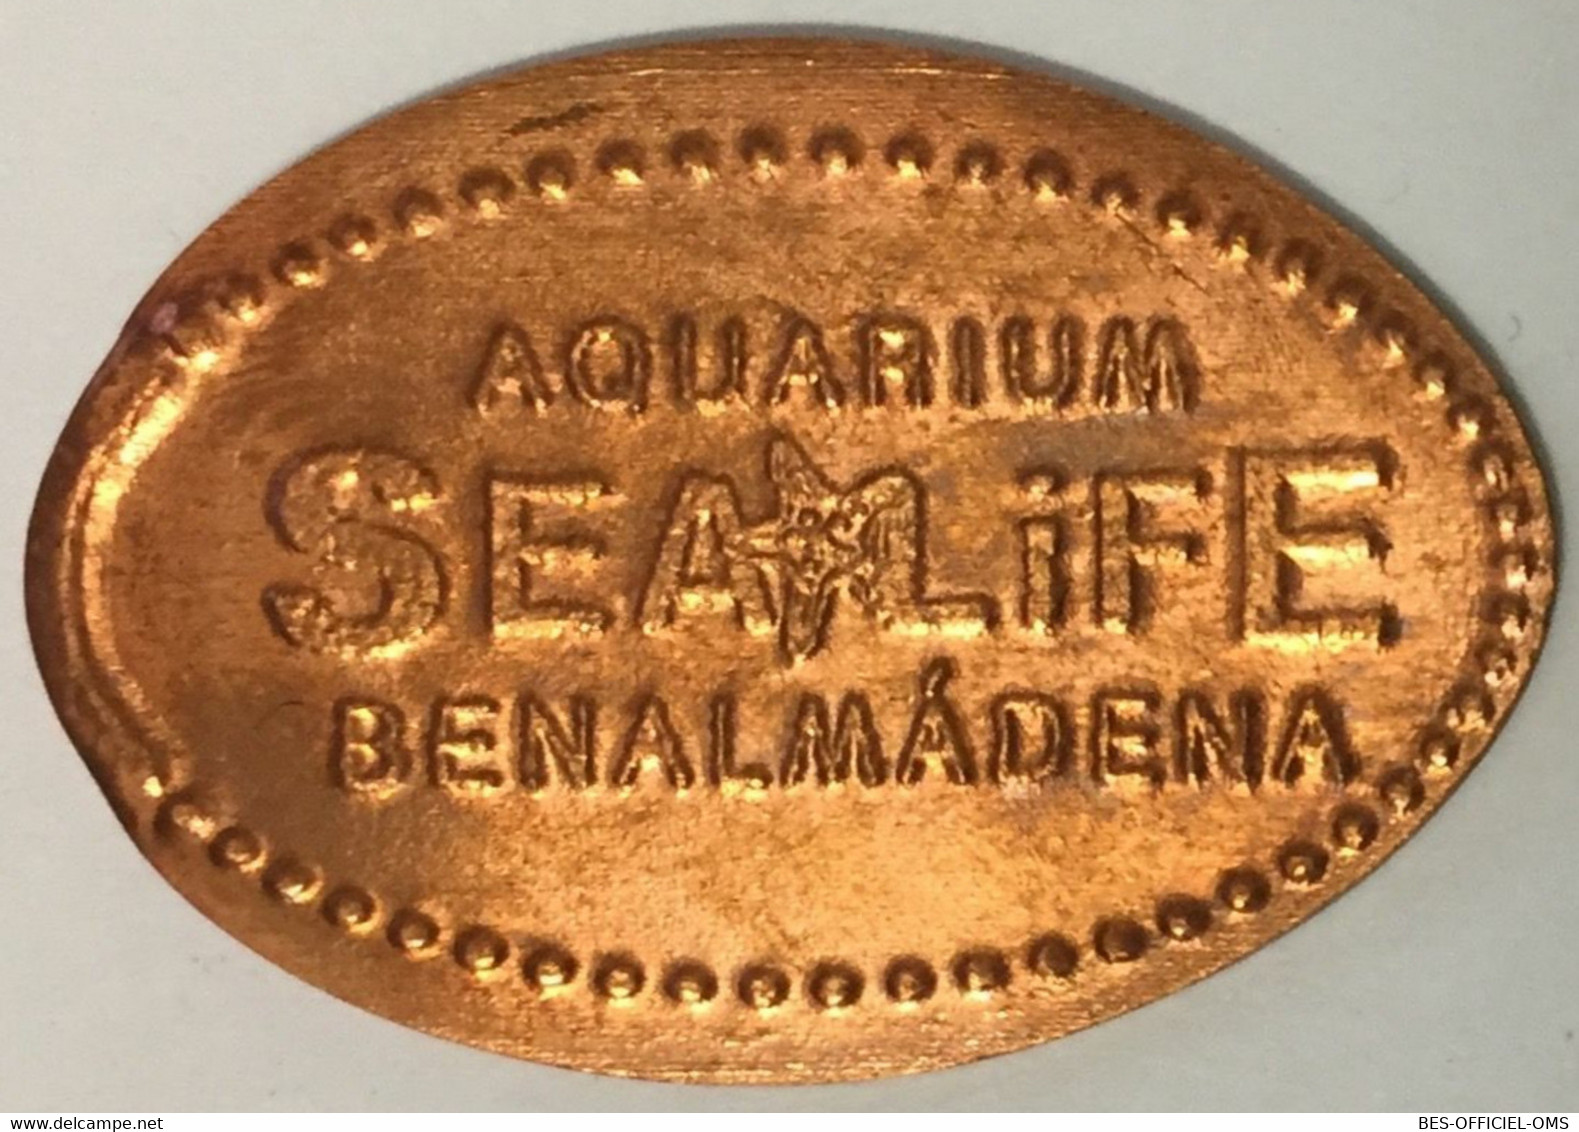 ESPAGNE AQUARIUM SEA LIFE BENALMÀDENA PIÈCE ÉCRASÉE ELONGATED COIN MEDAILLE TOURISTIQUE MEDALS TOKENS PIÈCE MONNAIE - Souvenirmunten (elongated Coins)